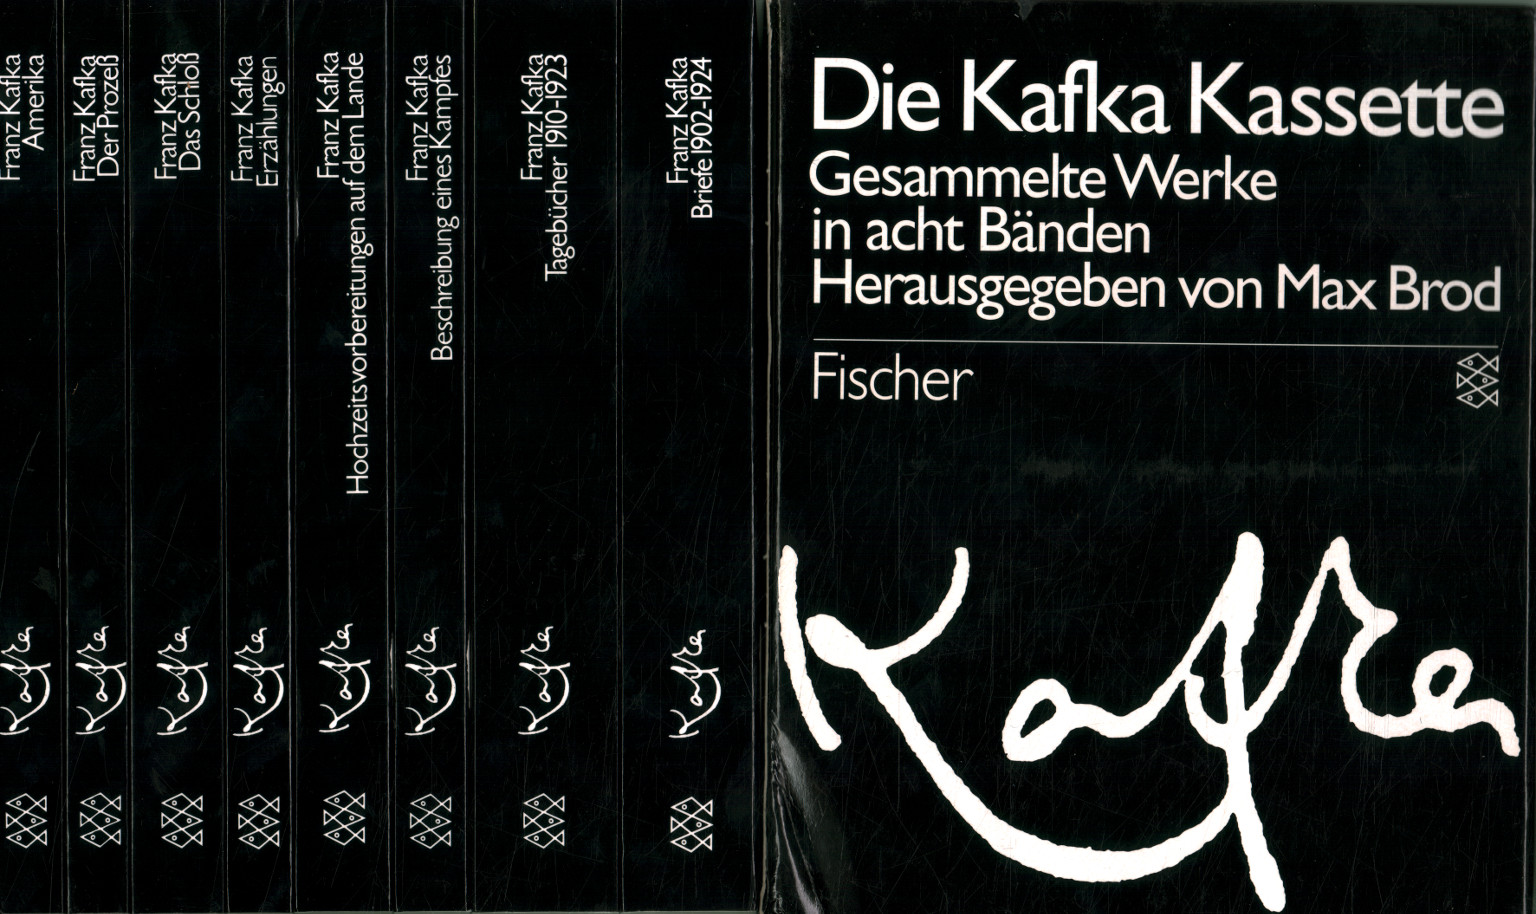 Casete de Kafka. Gesammelte Werke en %, Die Kafka Kassette. Gesammelte Werke en%